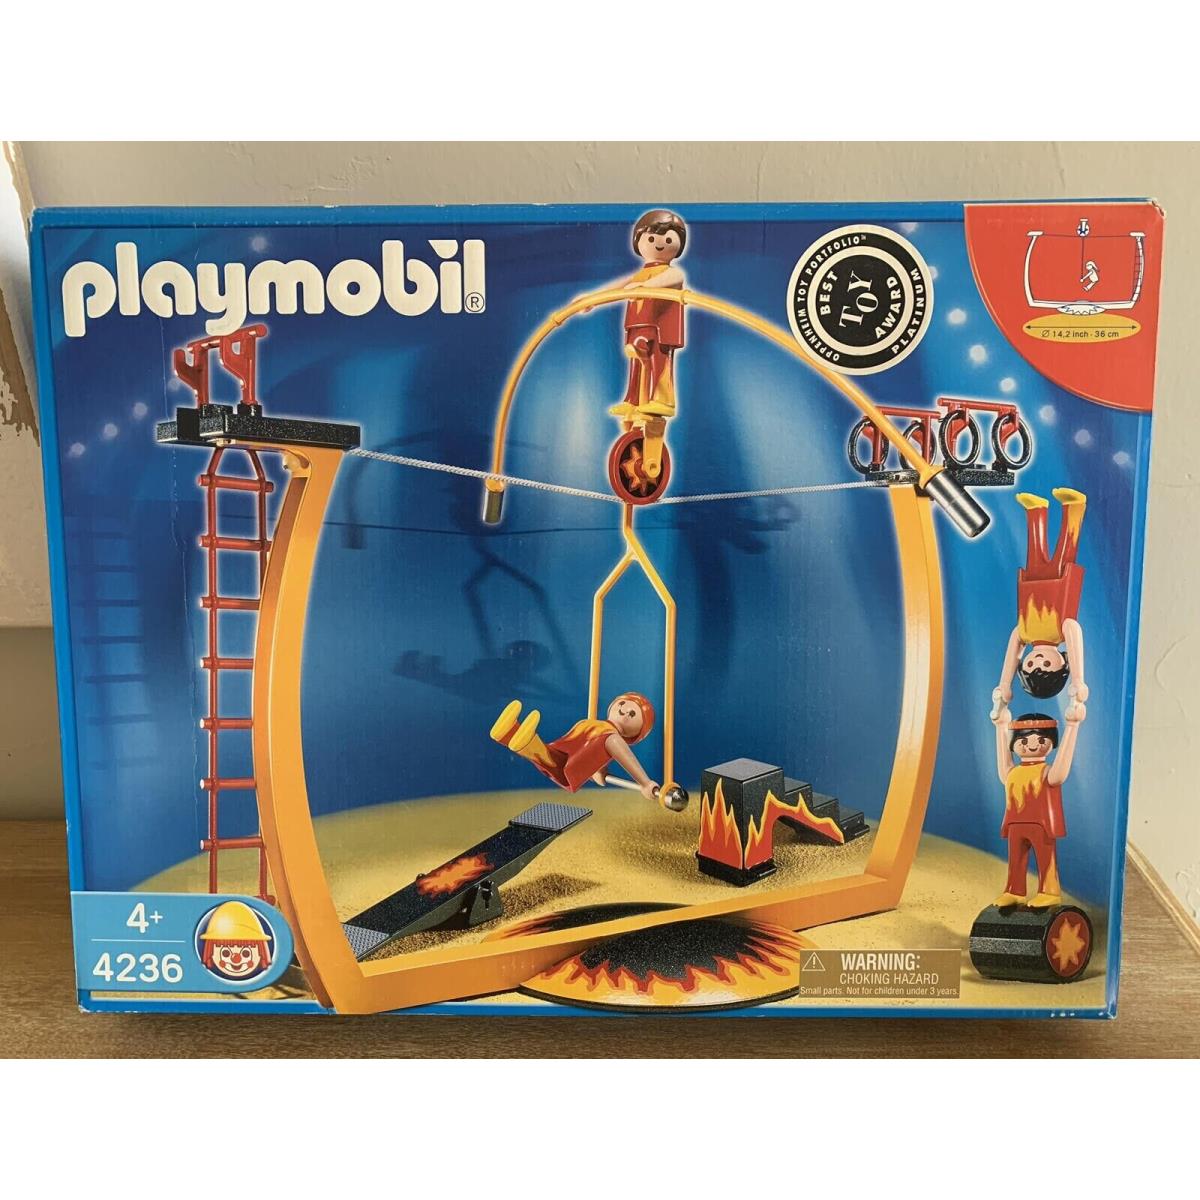 2006 Playmobil Circus 4236 Tightrope Walker Acrobats Stunts Men Women Figure